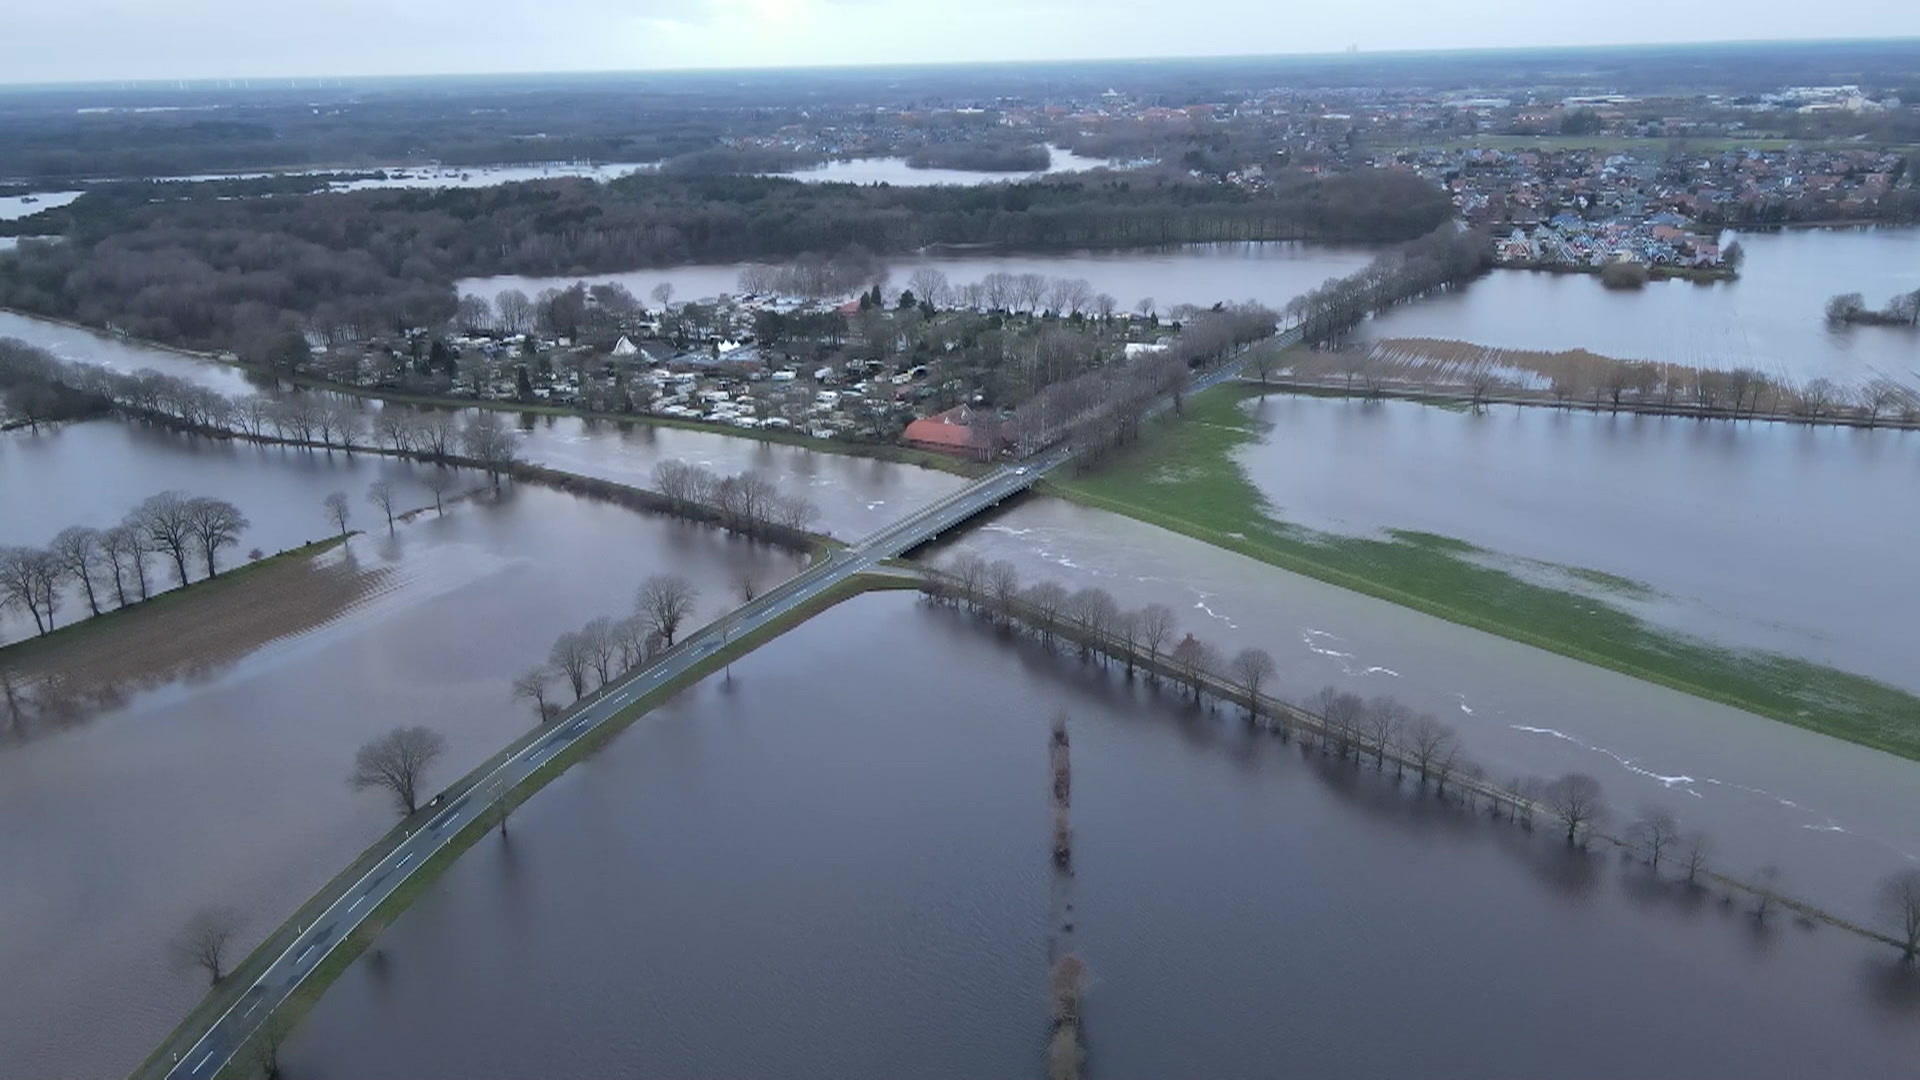 Powodzie zagrażają domom wielu ludzi w Niemczech